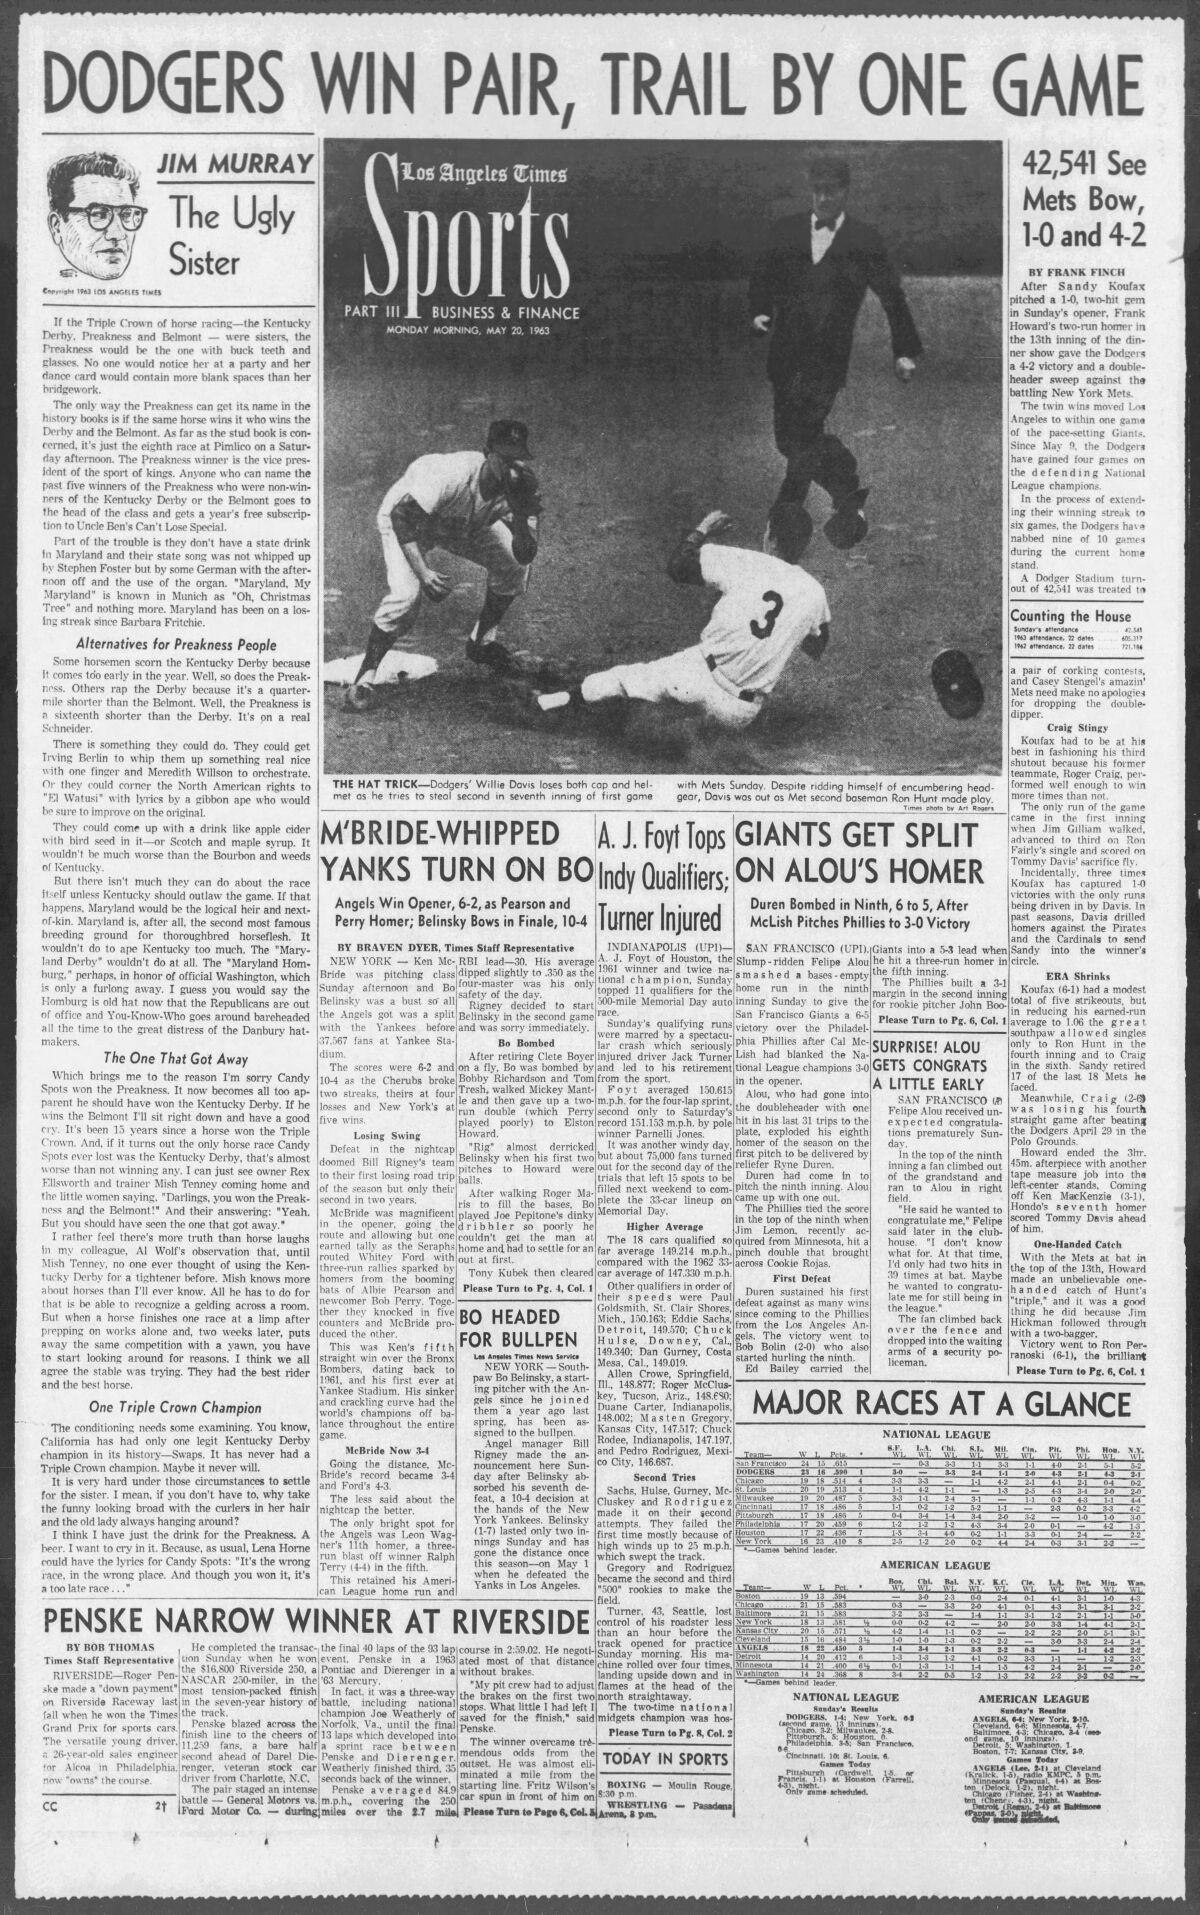 Πρωτοσέλιδο του αθλητικού τμήματος των Los Angeles Times στις 20 Μαΐου 1963.